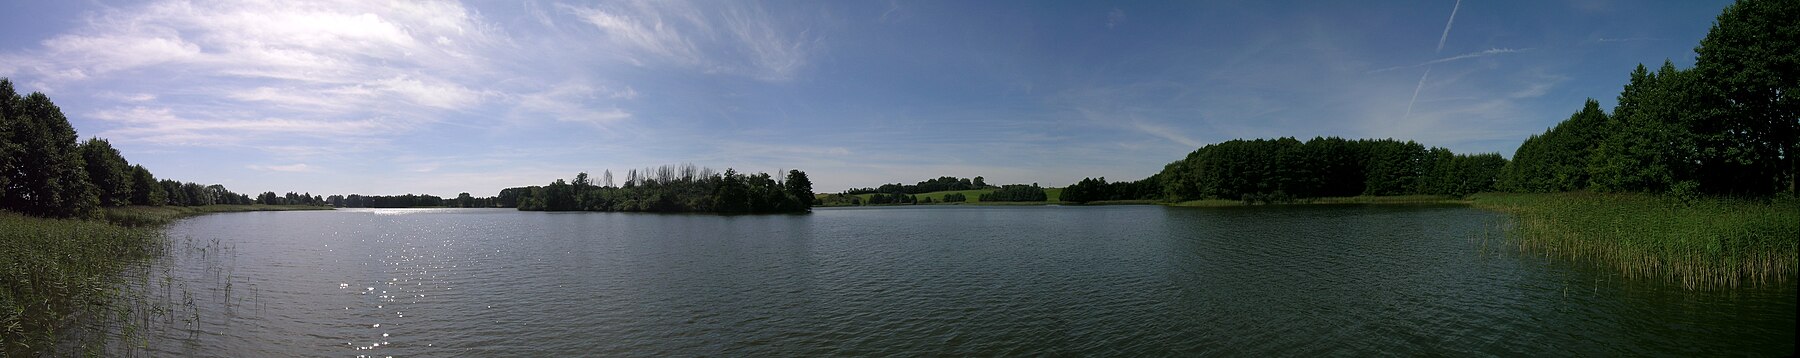 Ostrowite lake panorama.jpg